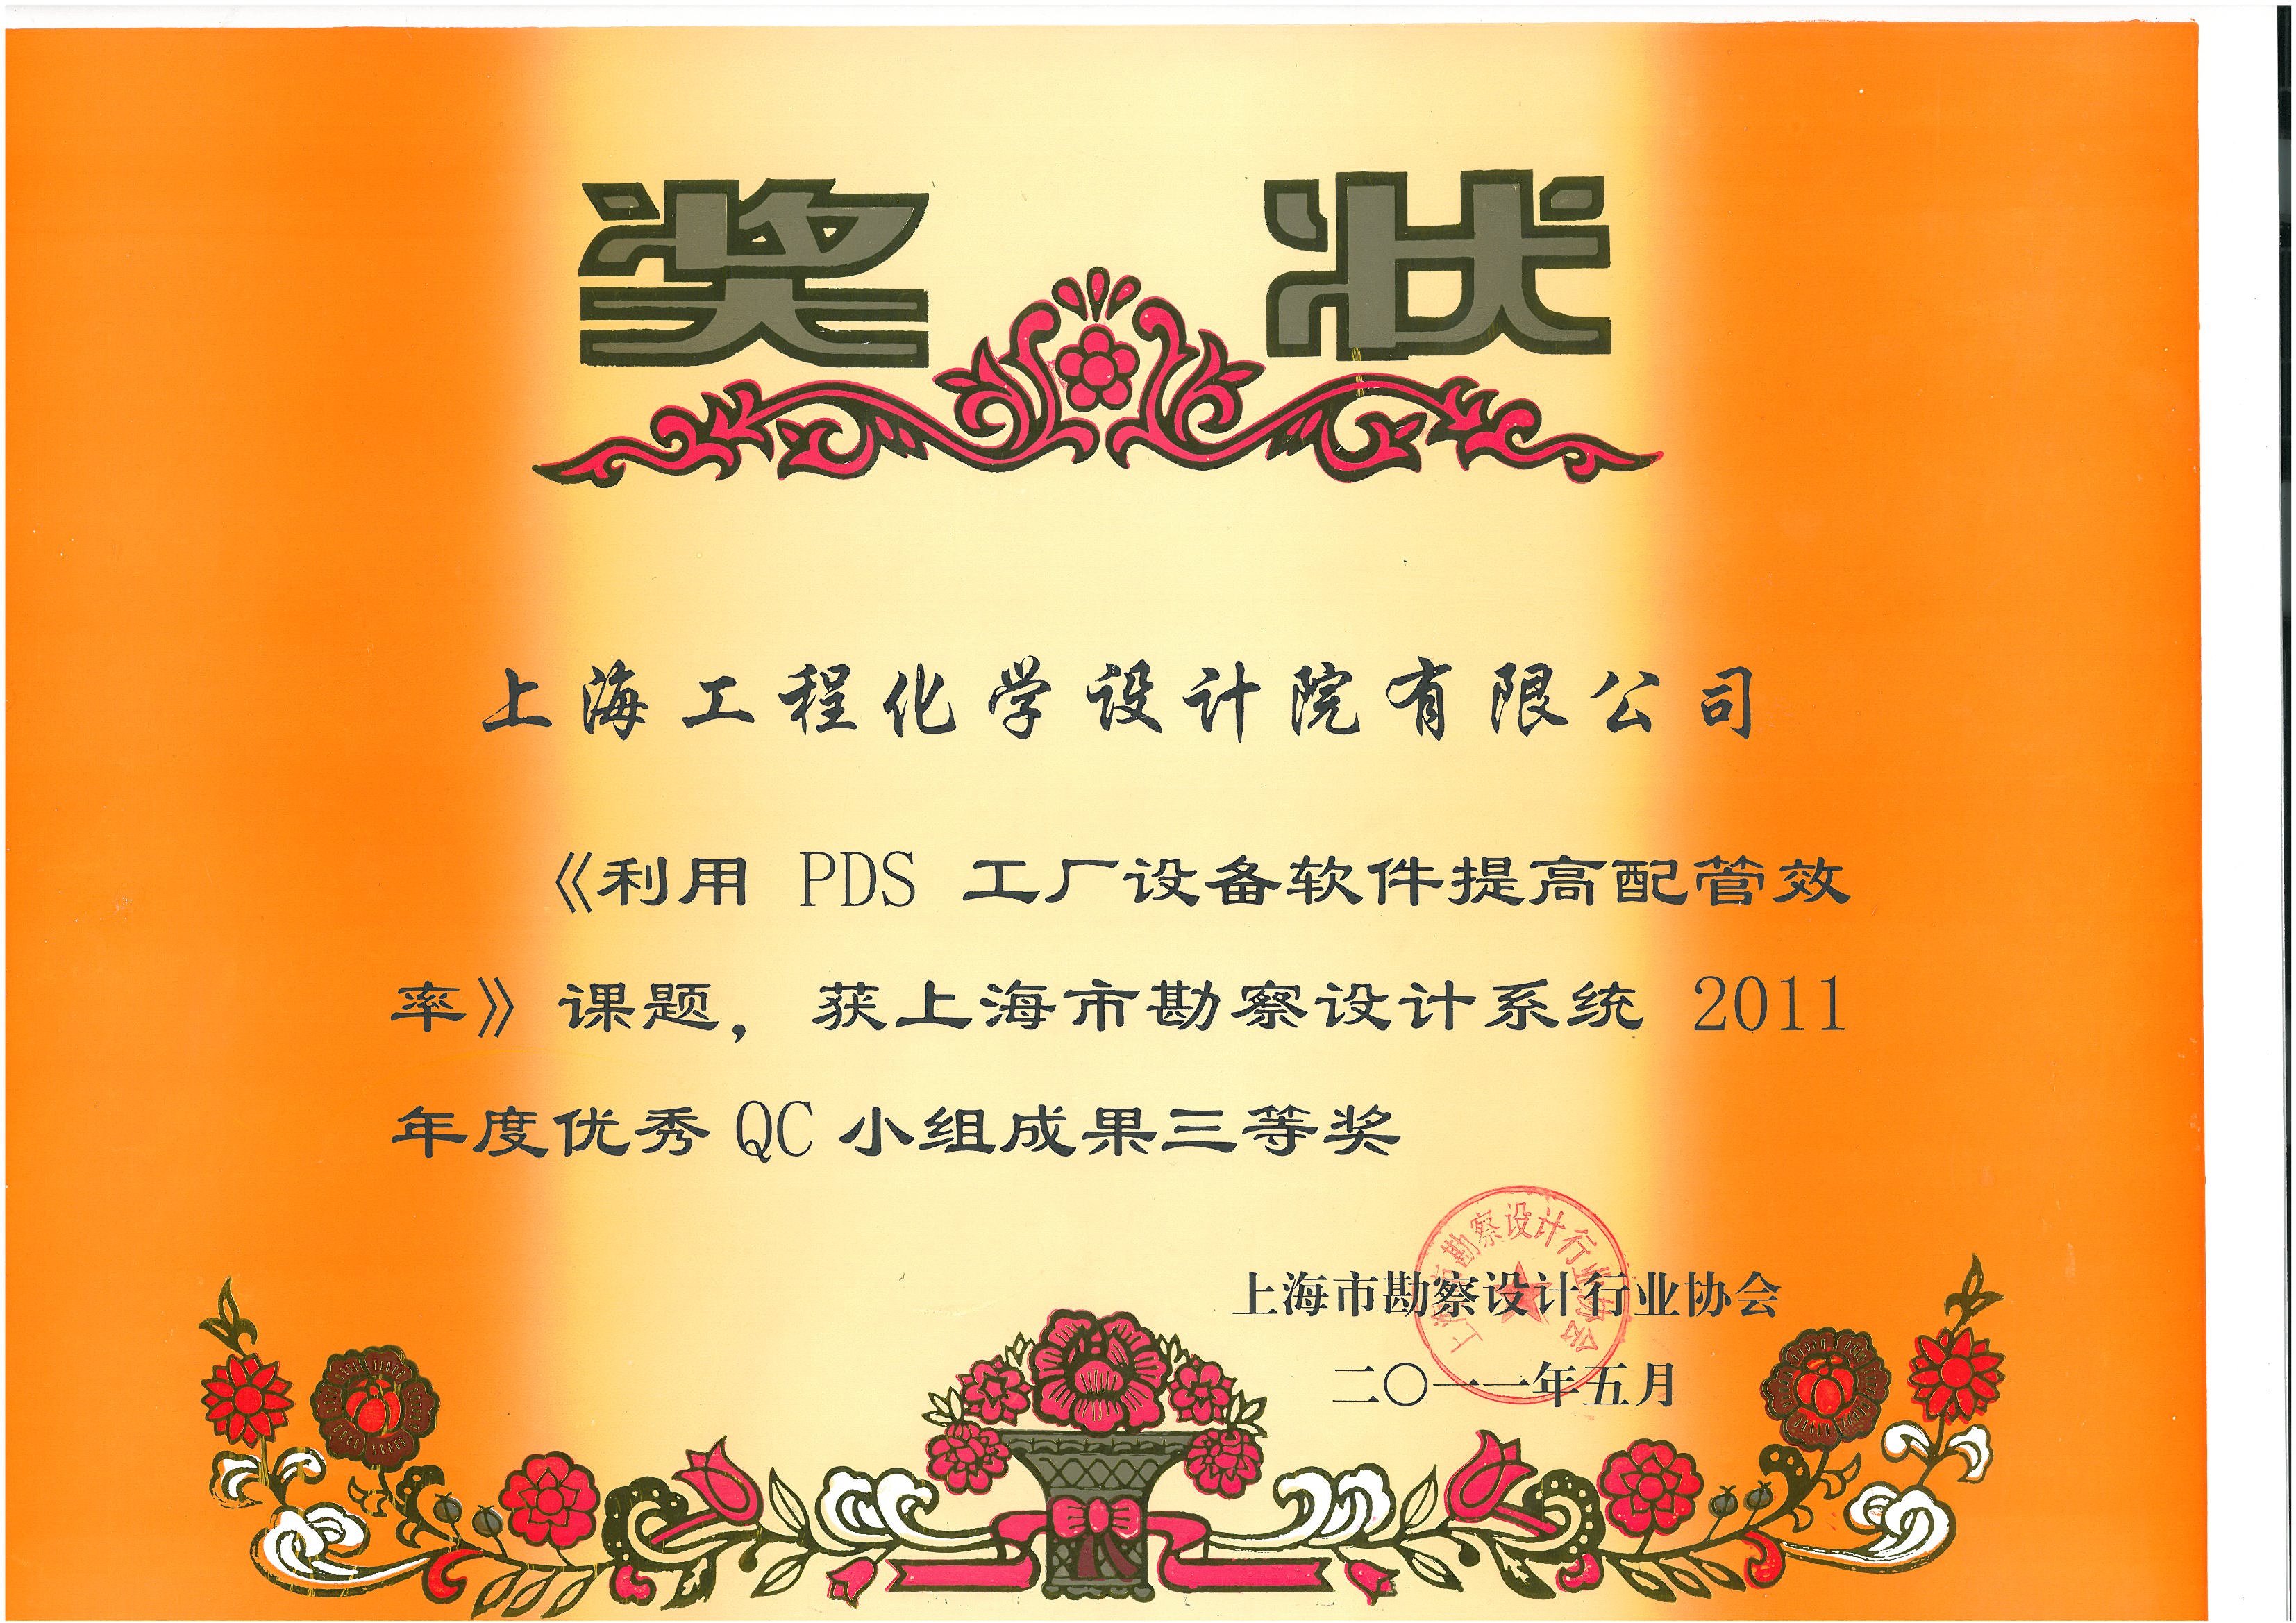 《利用PDS工厂设备软件提高配管效率》课题，获上海市勘察设计系统2011年度优秀QC小组成果三等奖